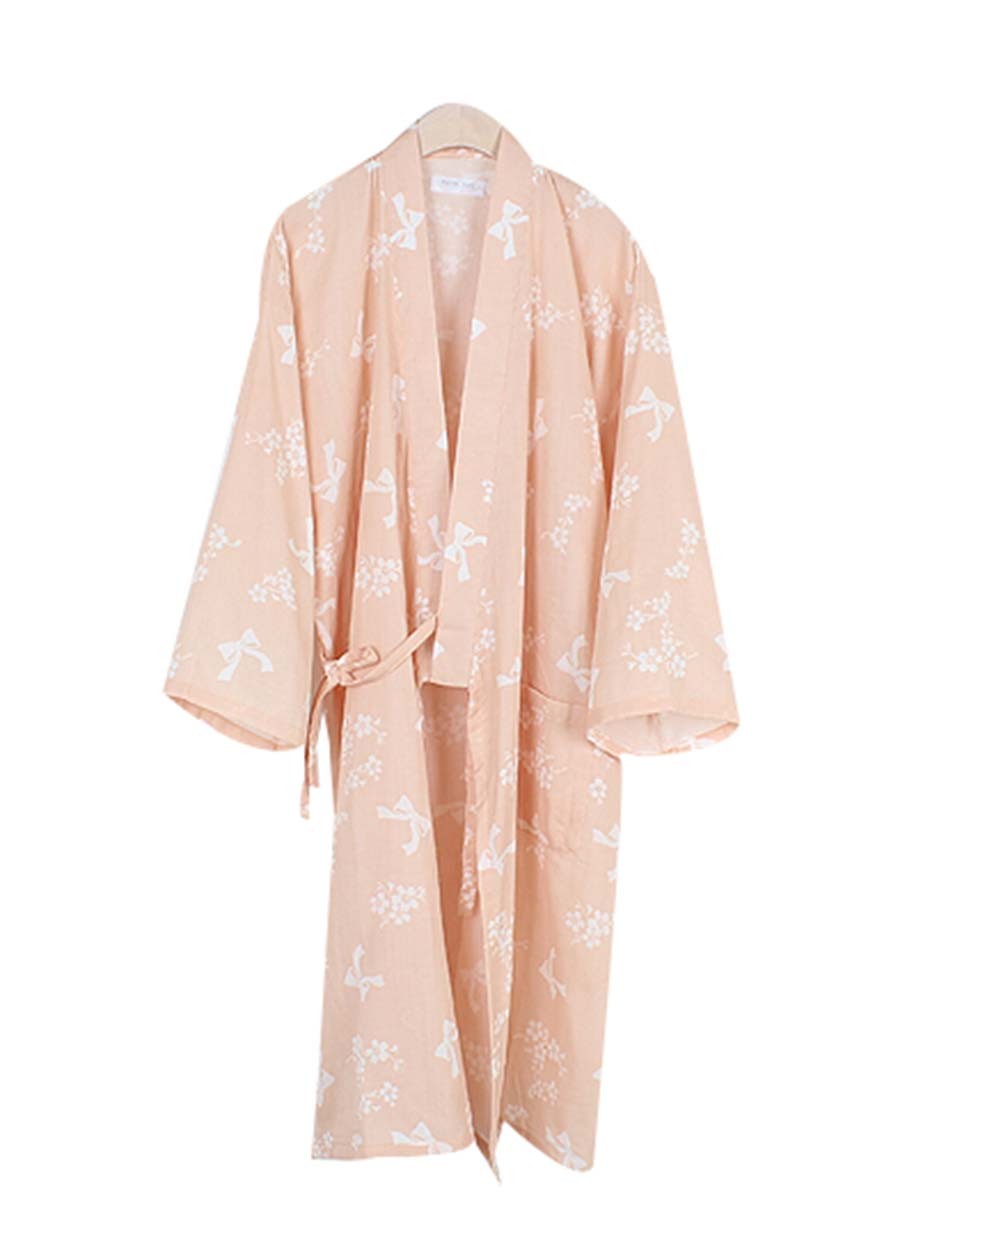 Cotton Pajamas Khan Steamed Clothing Loose Pajamas Yukata,Orange